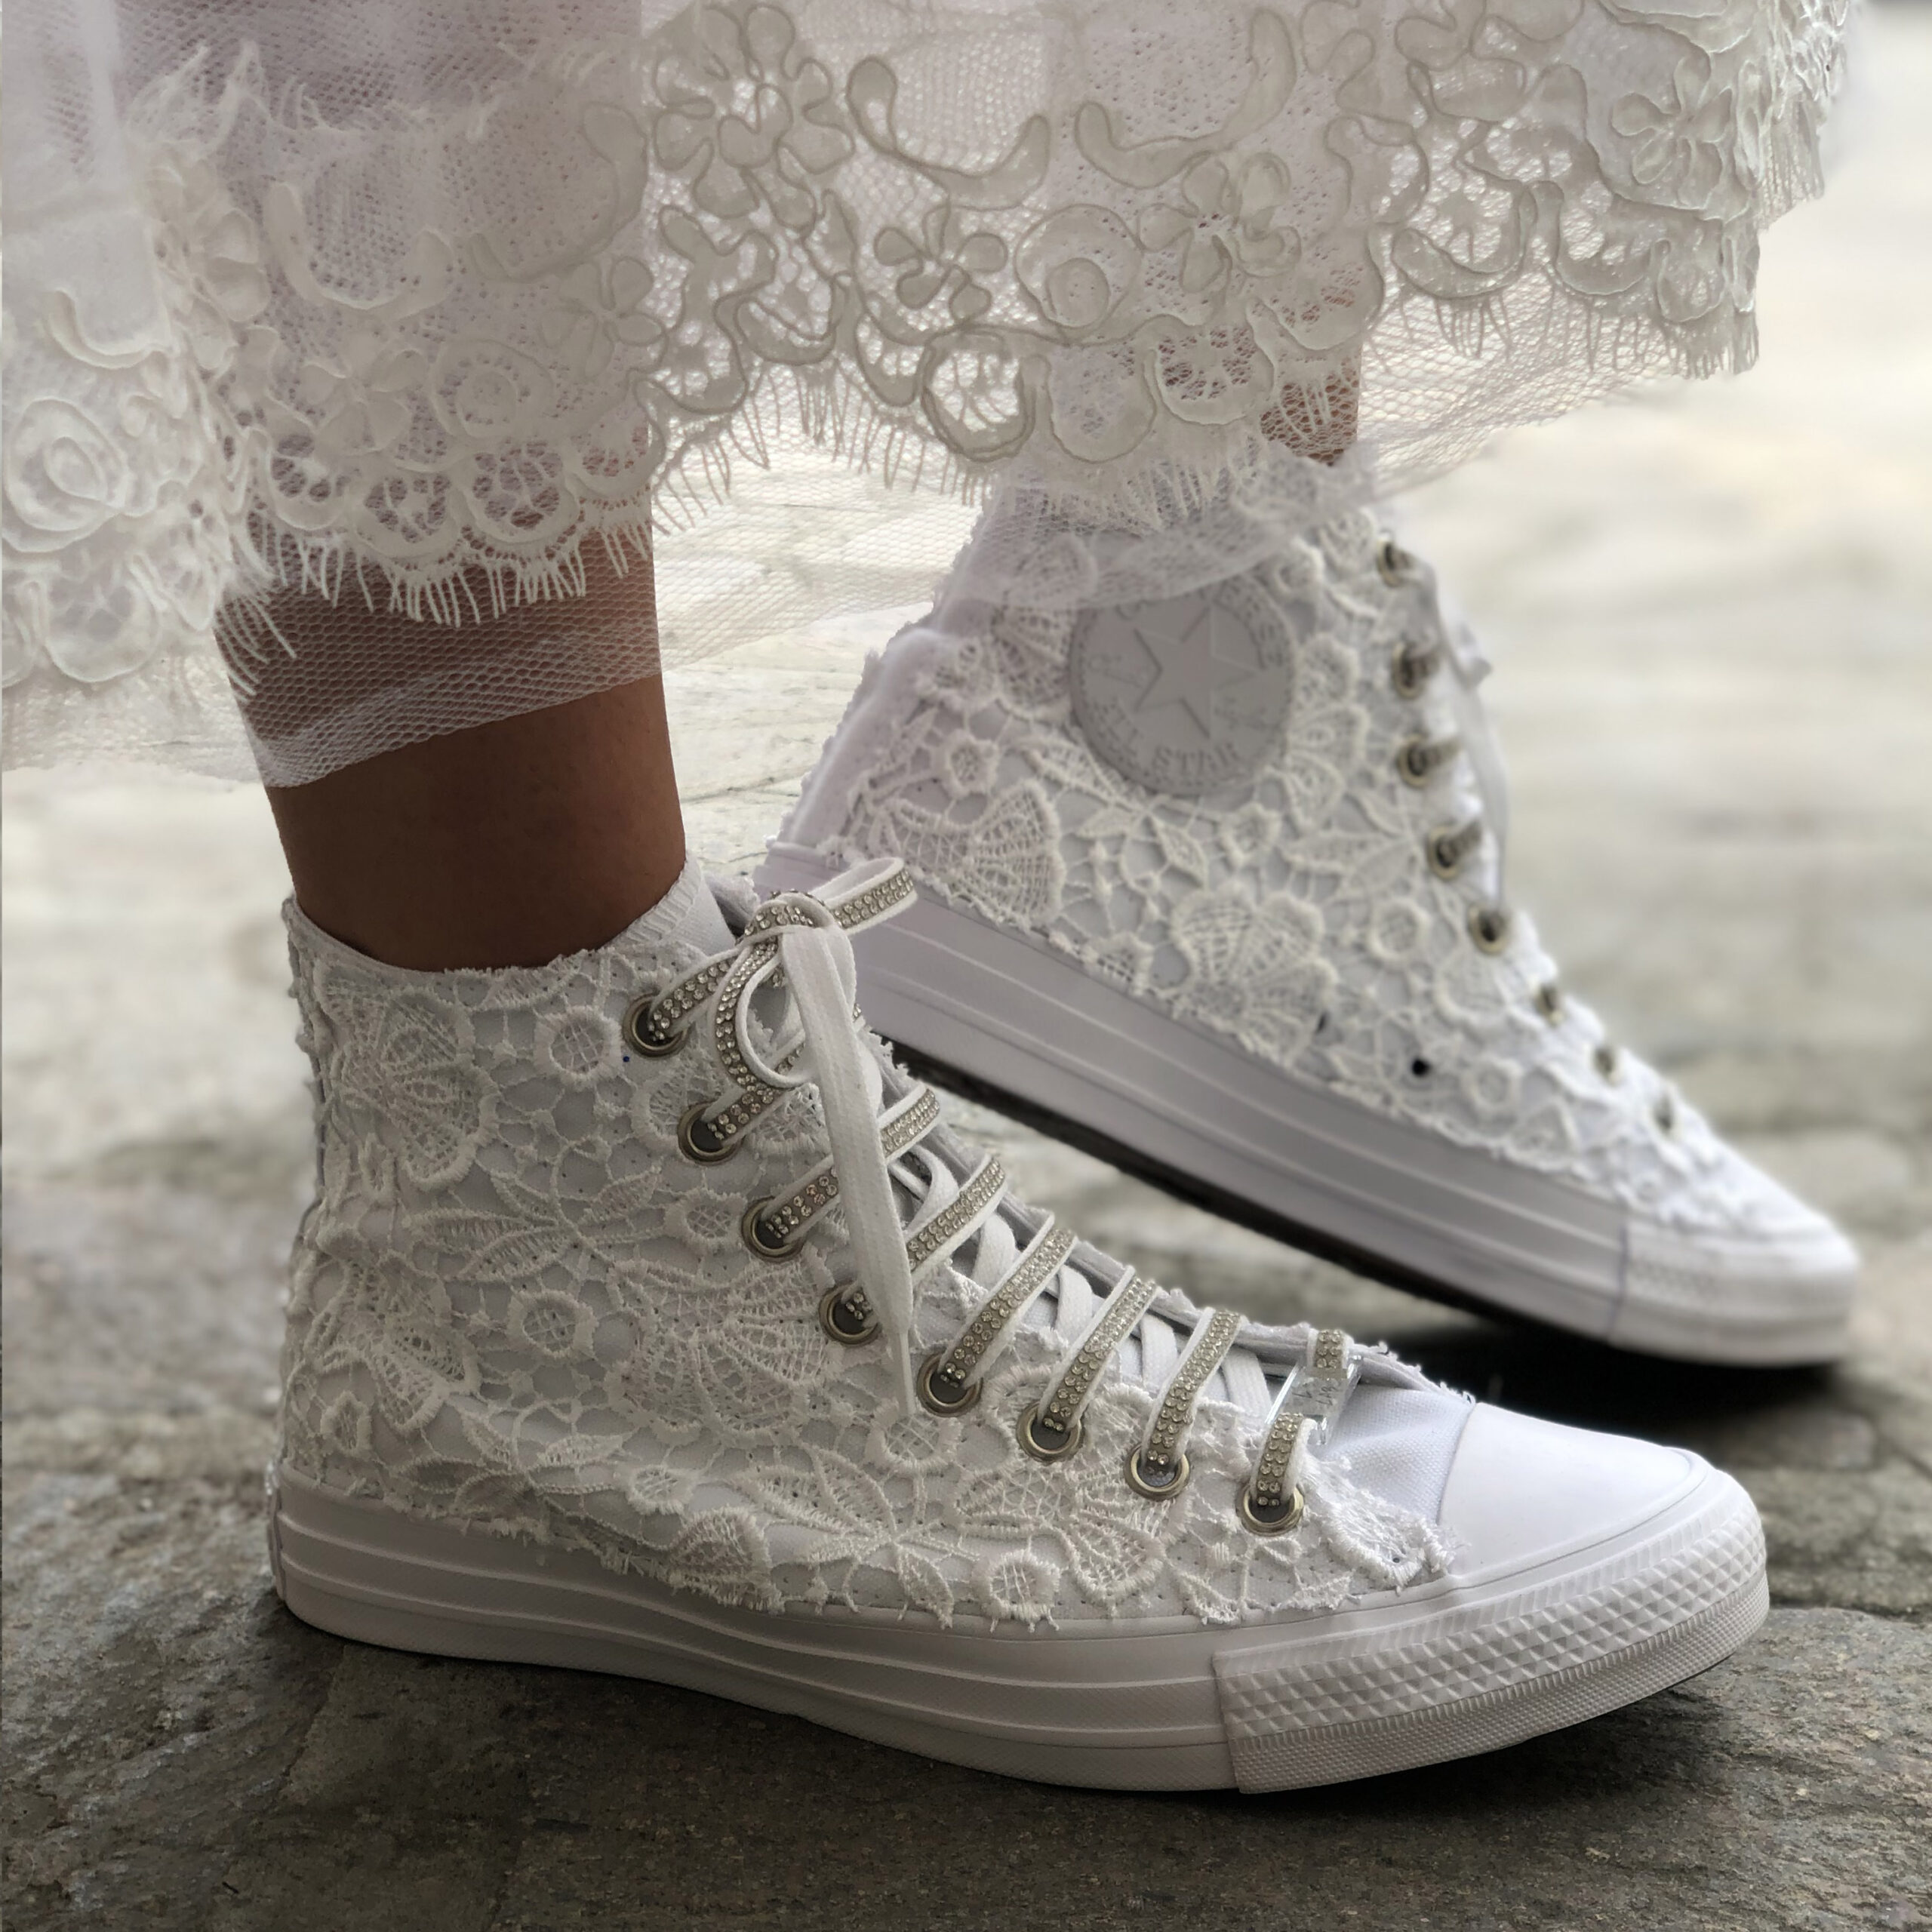 Converse All Star Personalizzate Sposa Laccetti Bianchi - White Lace Luxury صبغة طبيعية